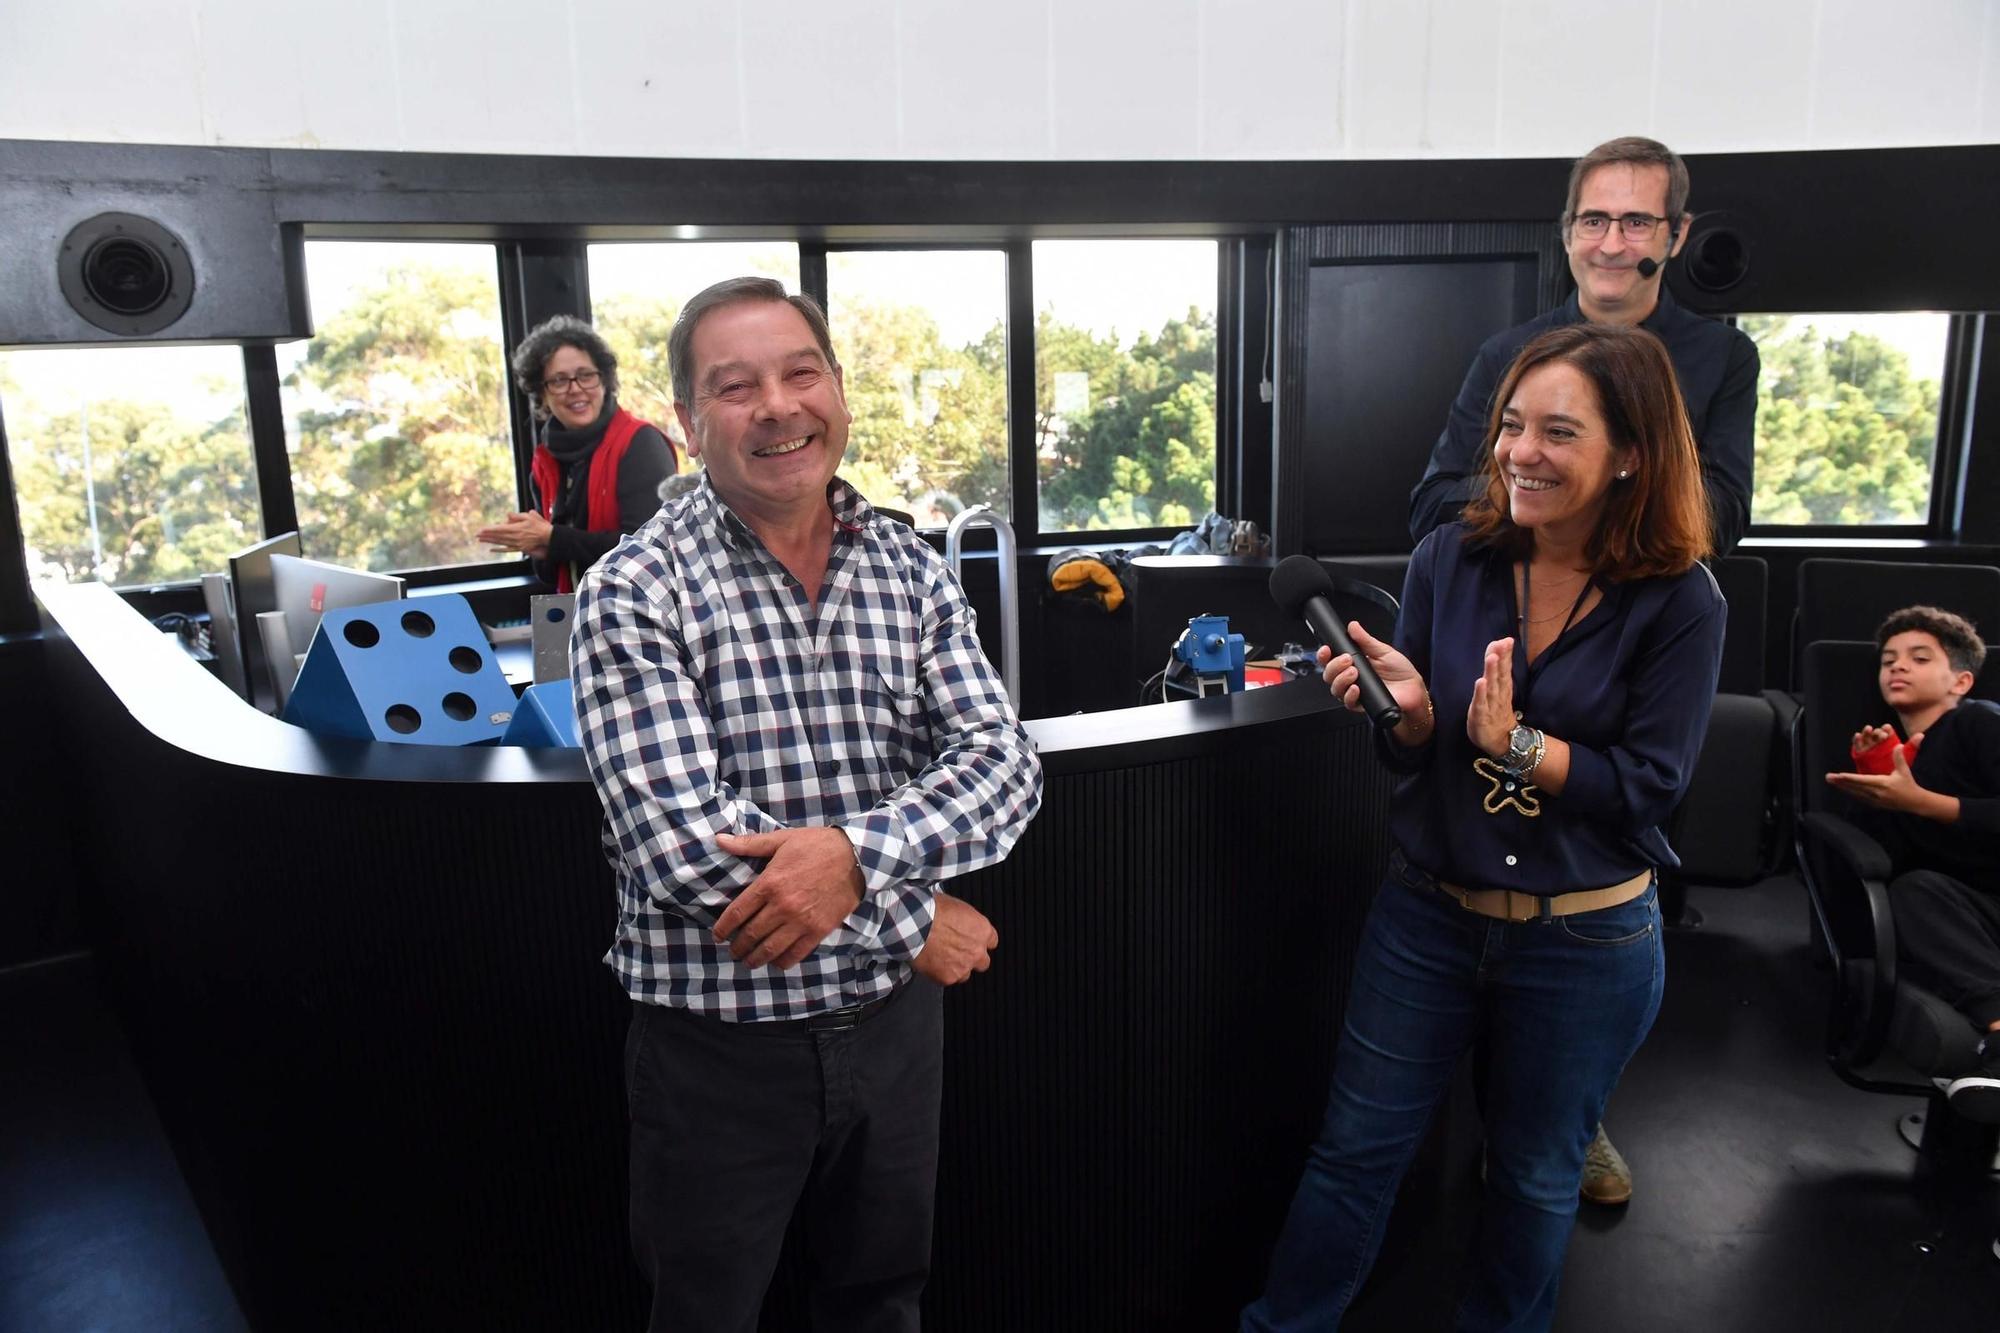 El Planetario incorpora un nuevo proyector para mejorar las experiencias inmersivas